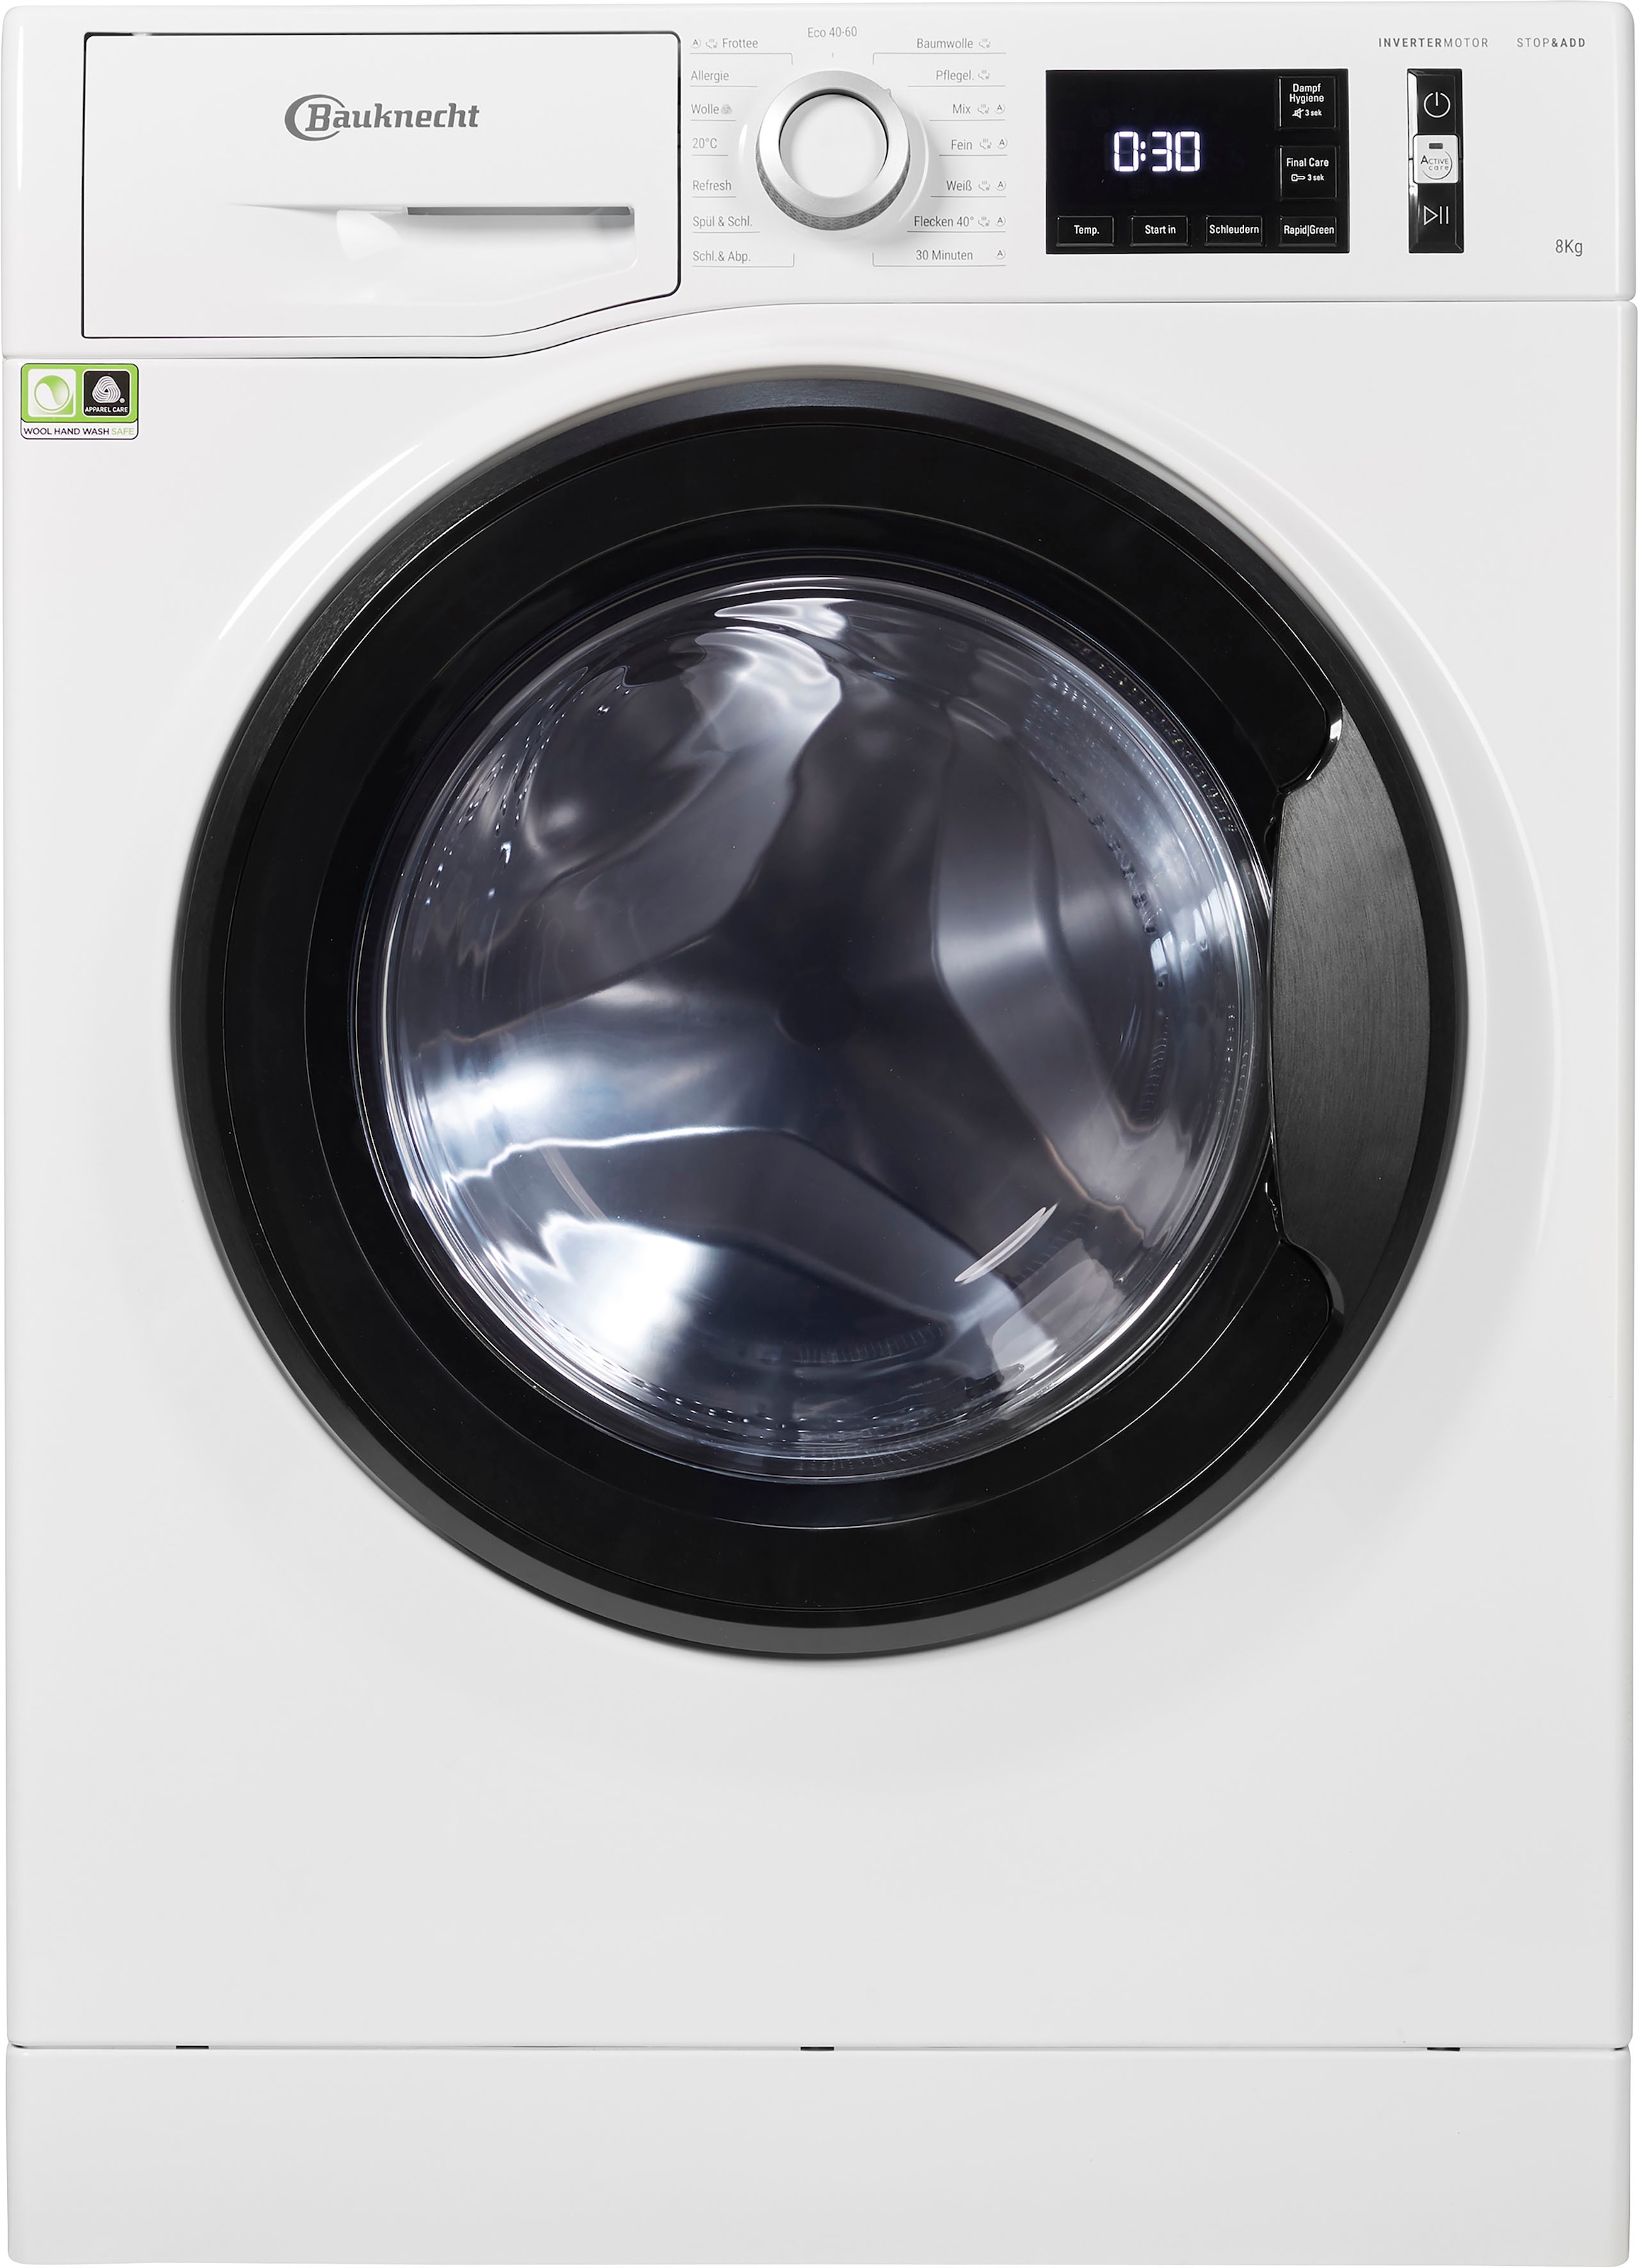 BAUKNECHT Waschmaschine 8 kg, 8421«, Eco U/min 1400 8421, Super bei jetzt Eco online »Super OTTO